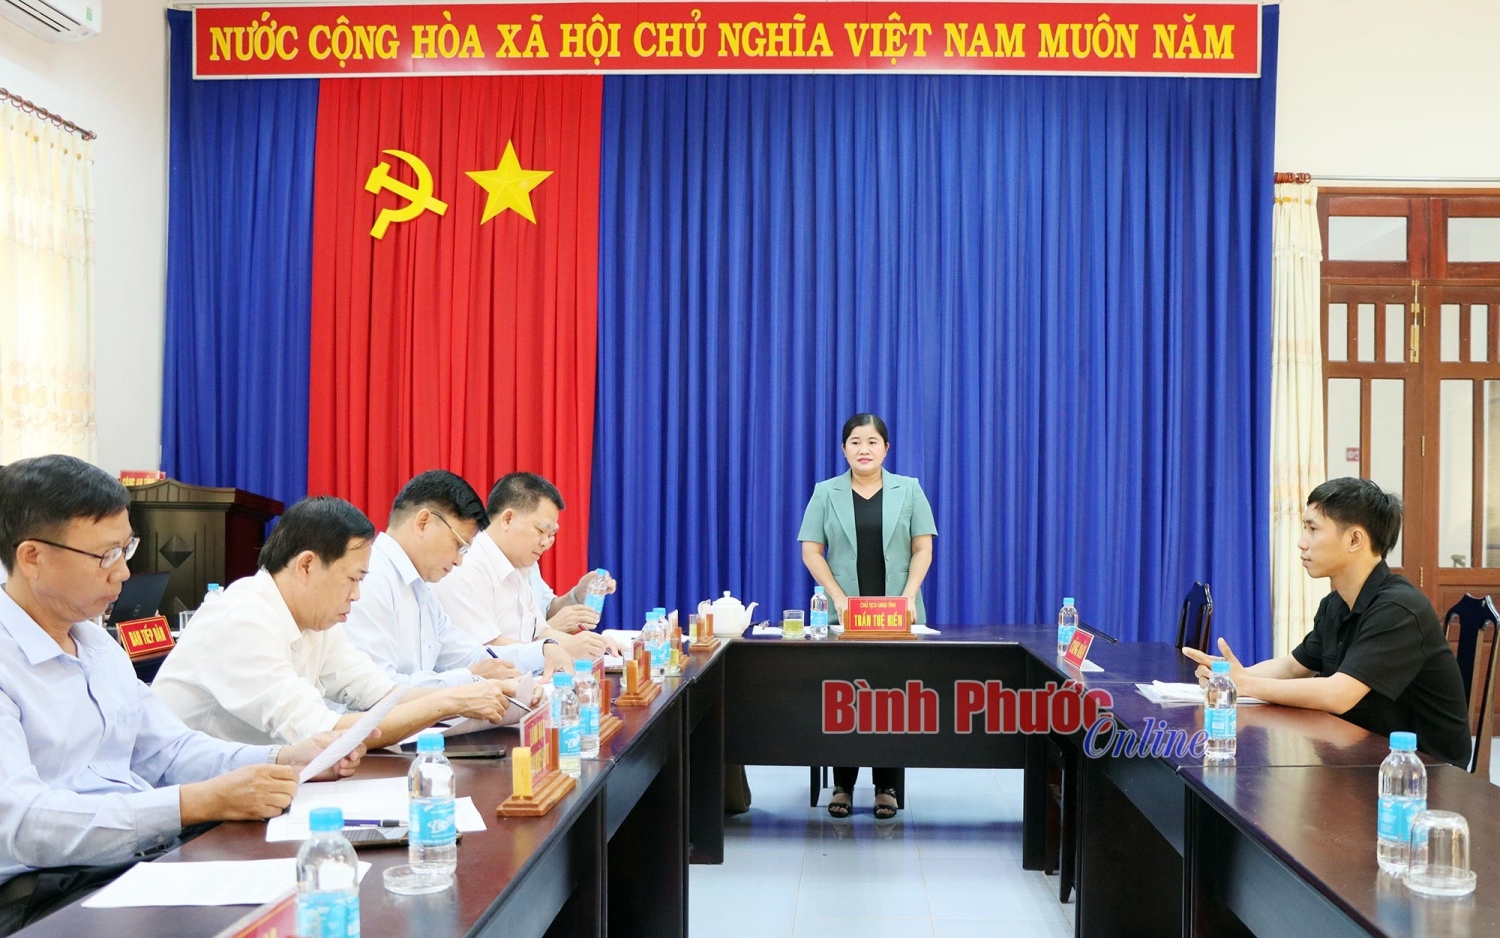 Phó Bí thư Tỉnh ủy, Chủ tịch UBND tỉnh Trần Tuệ Hiền trả lời các kiến nghị của công dân tại buổi tiếp công dân định kỳ (ảnh: Báo Bình Phước Online)